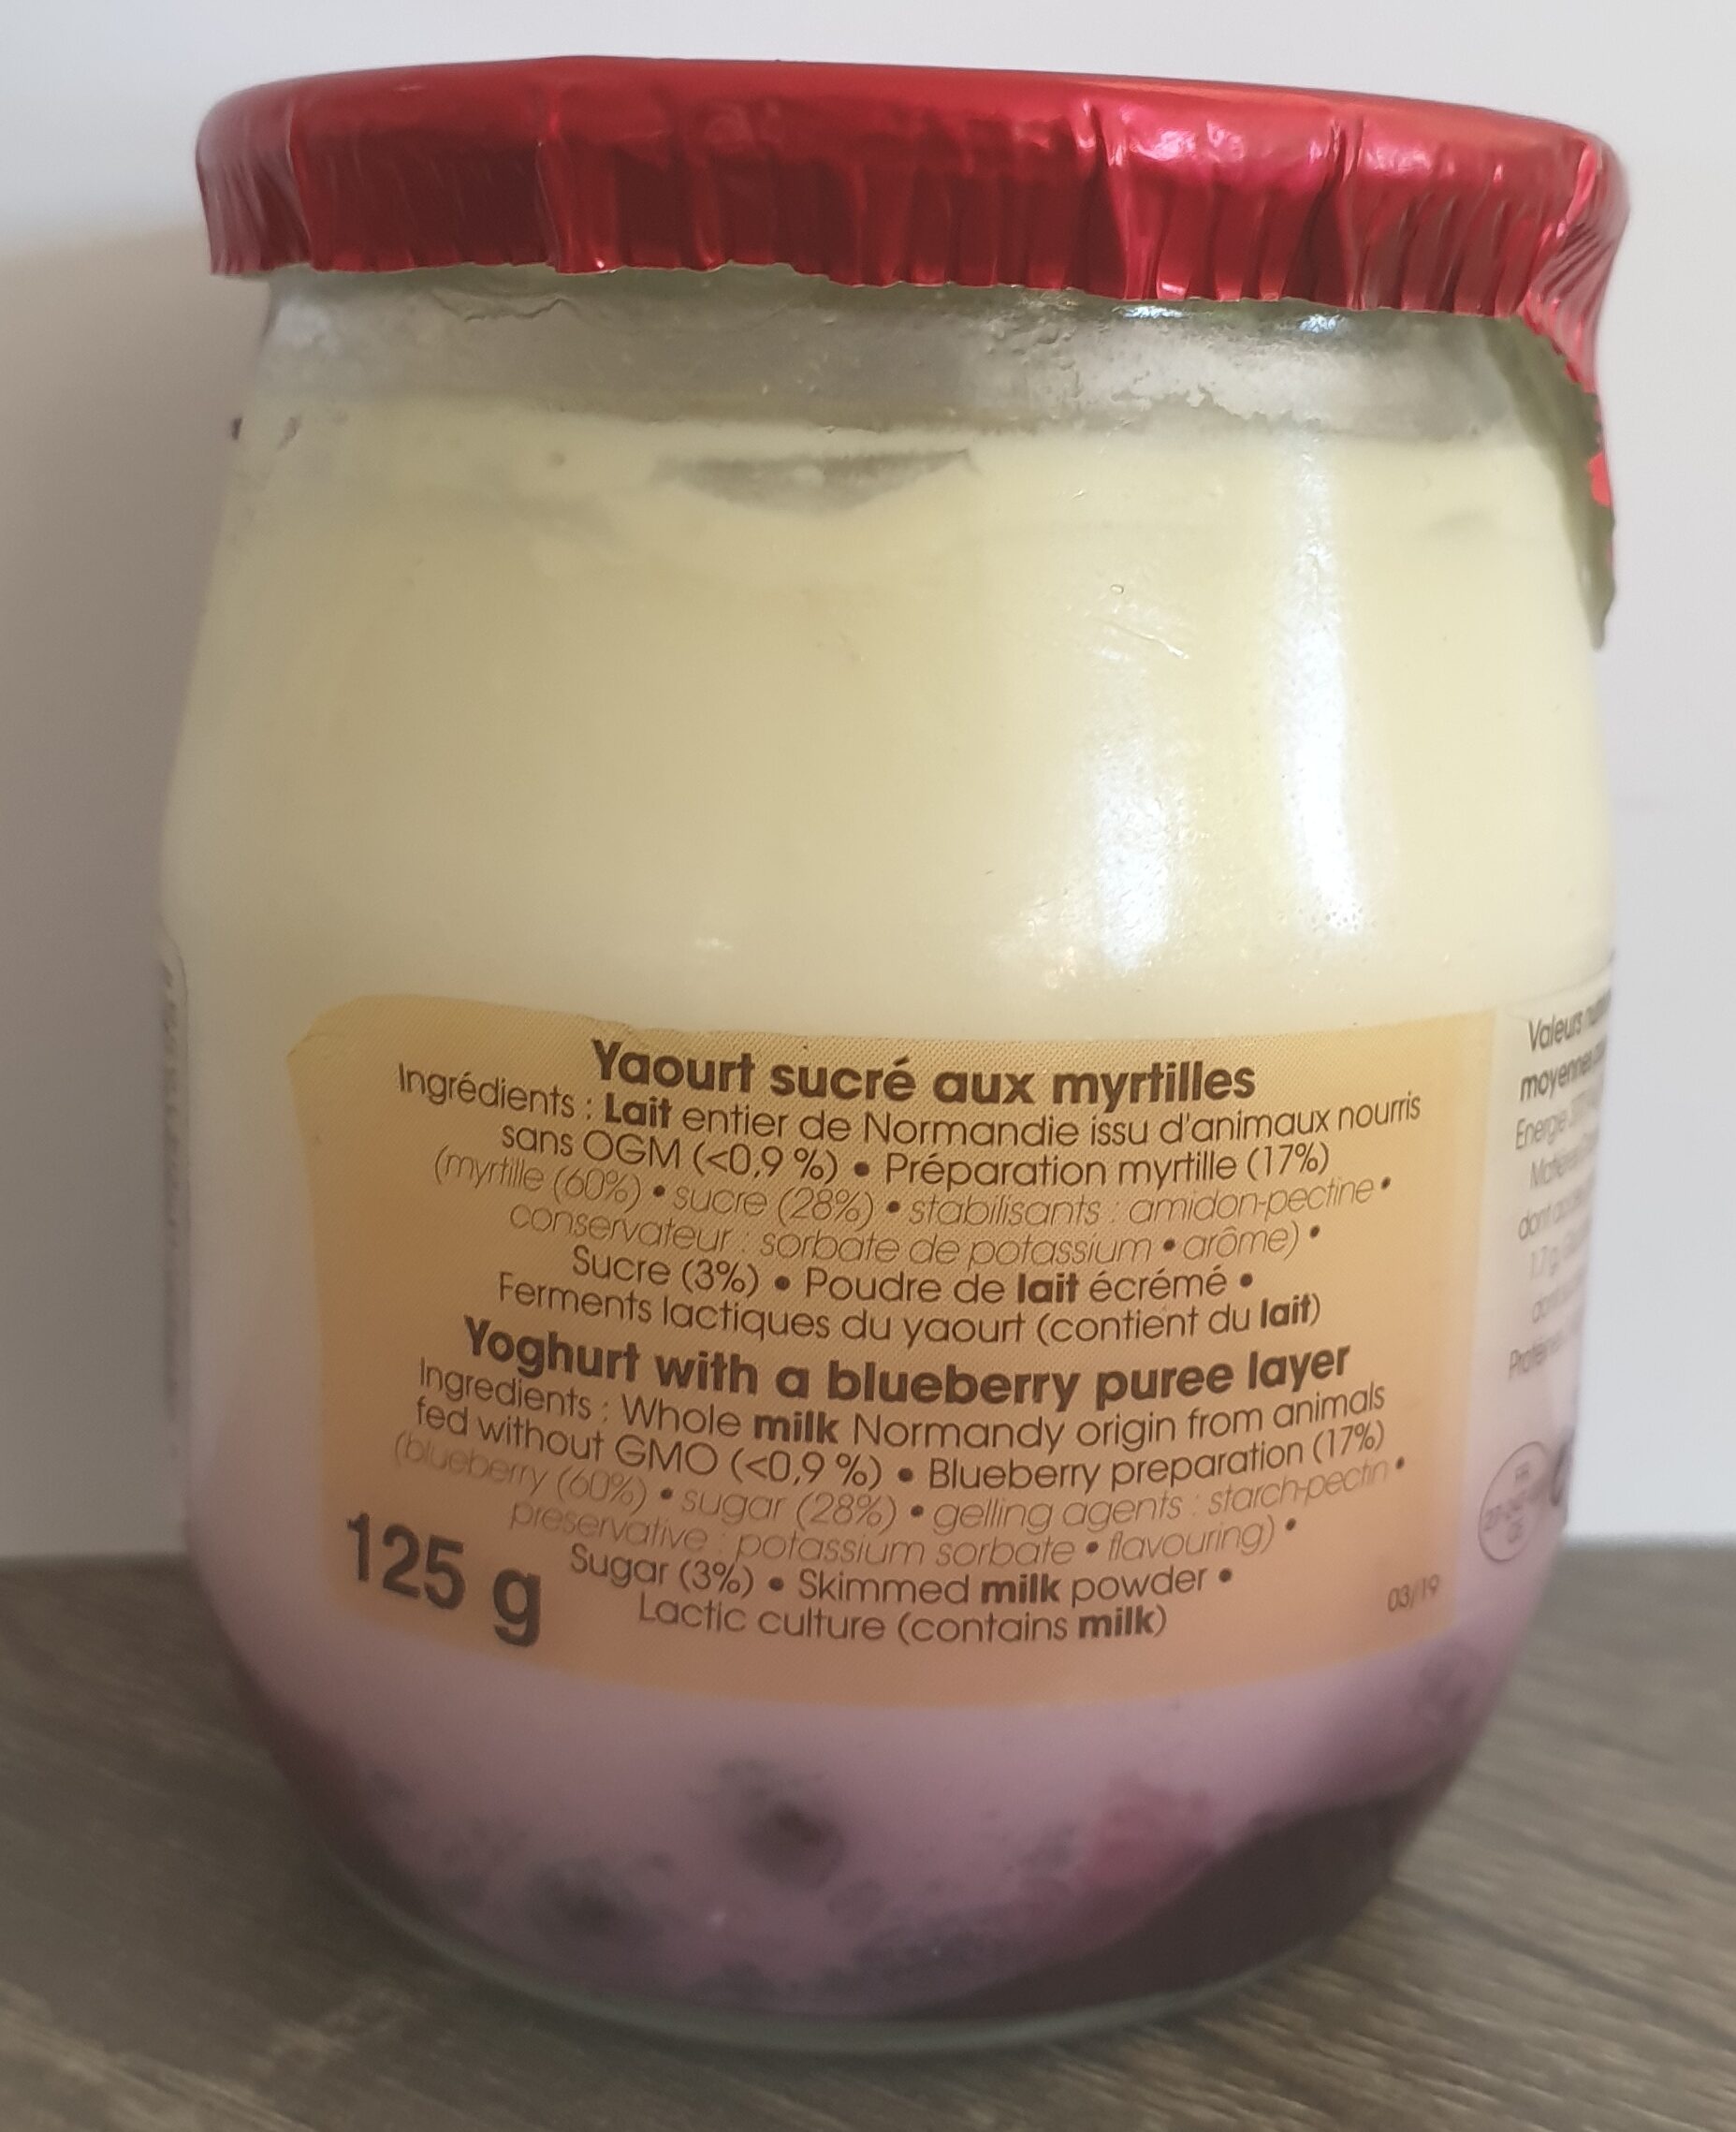 Yahourt a la myrtille - Ingredients - en